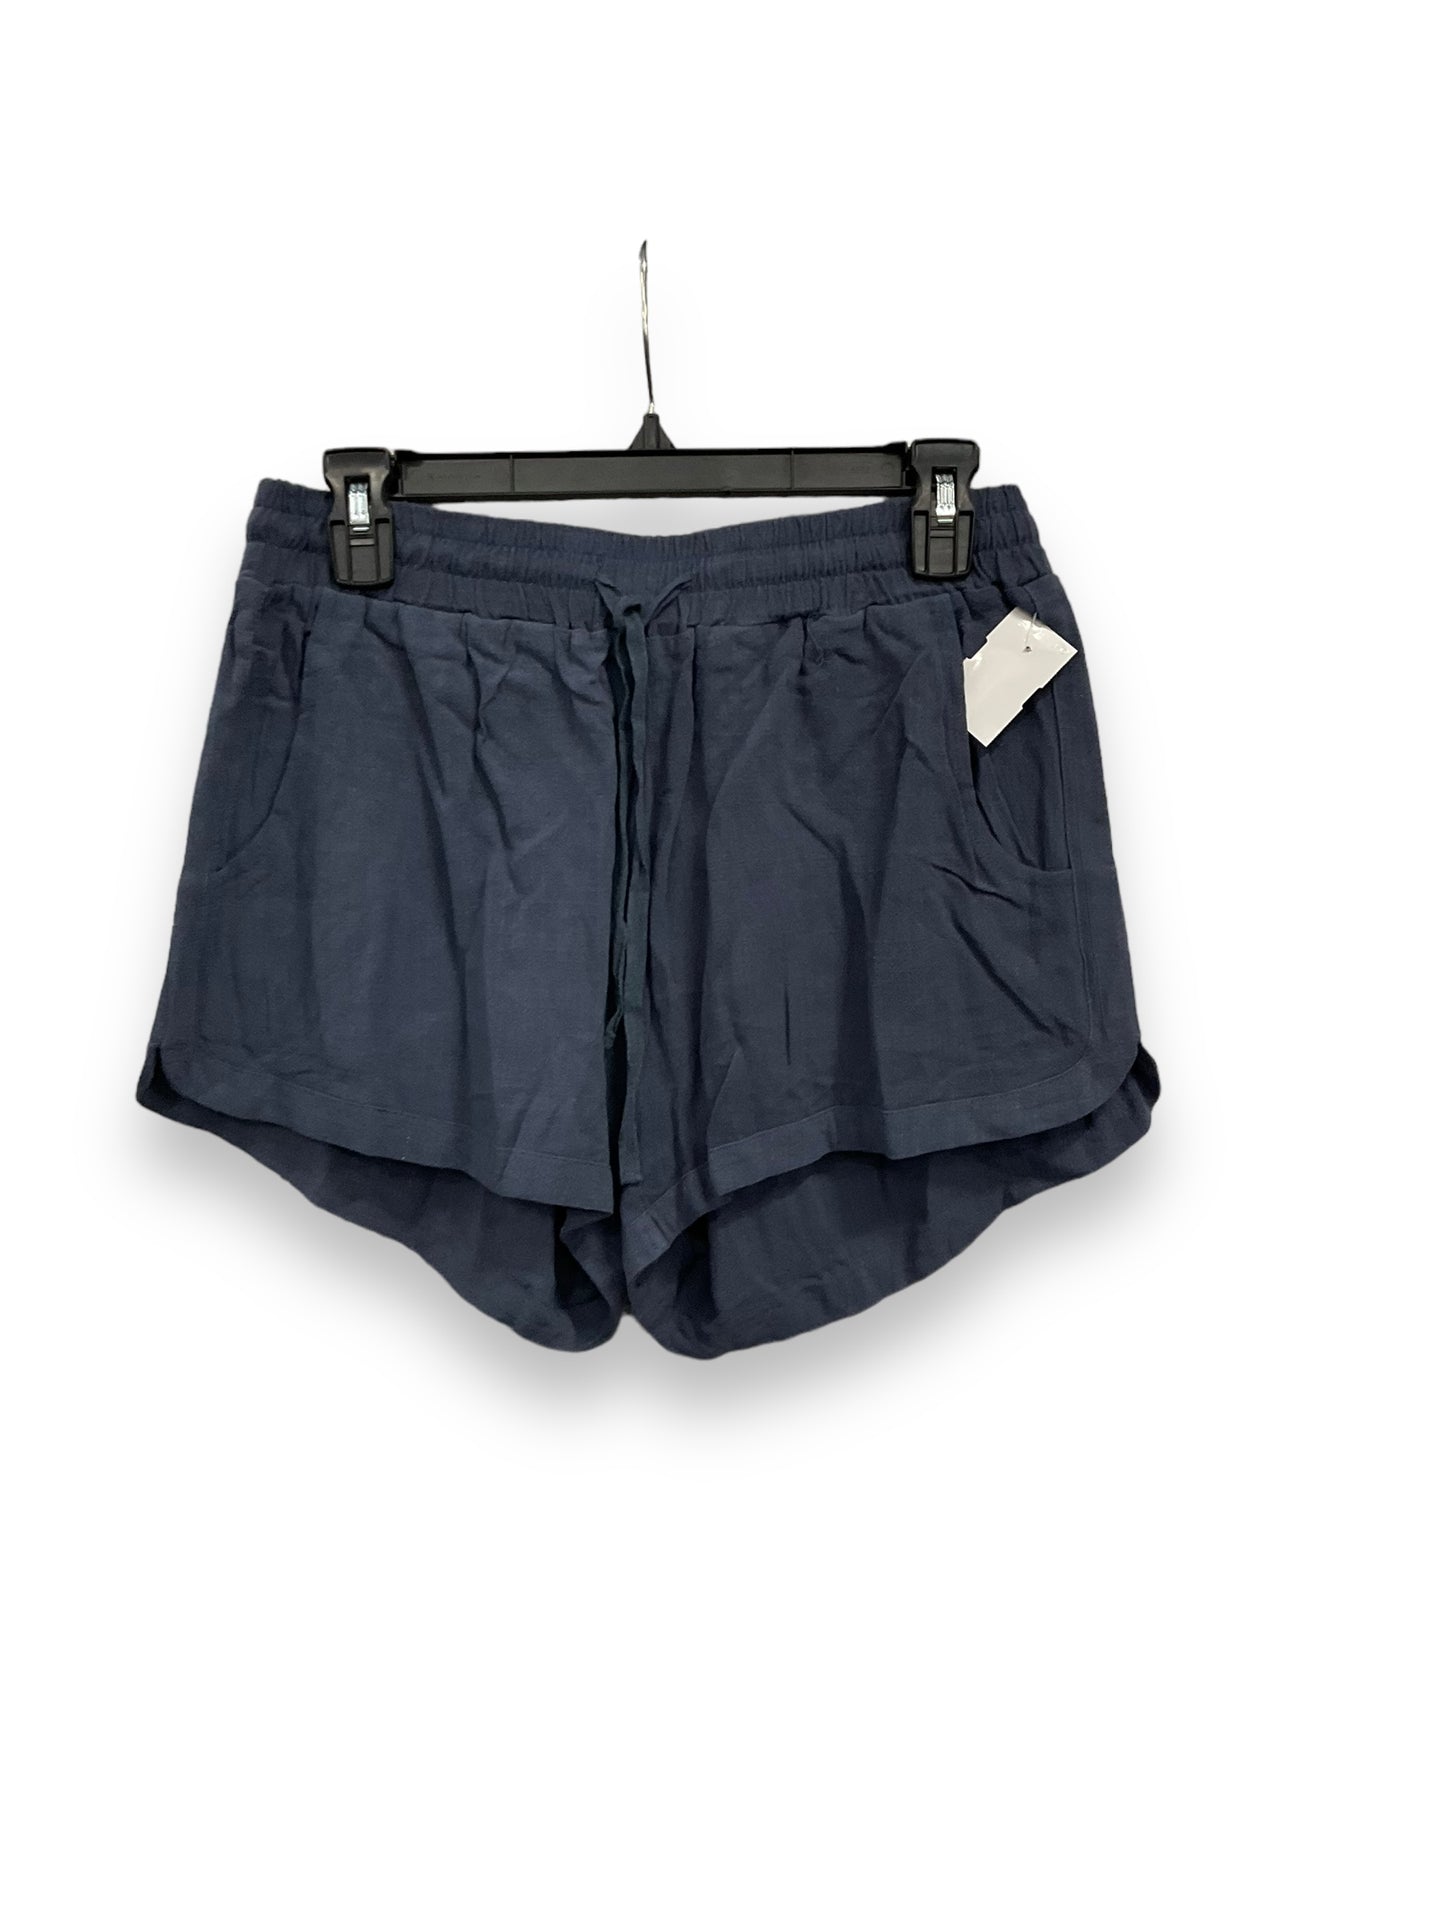 Shorts By Kori America  Size: M